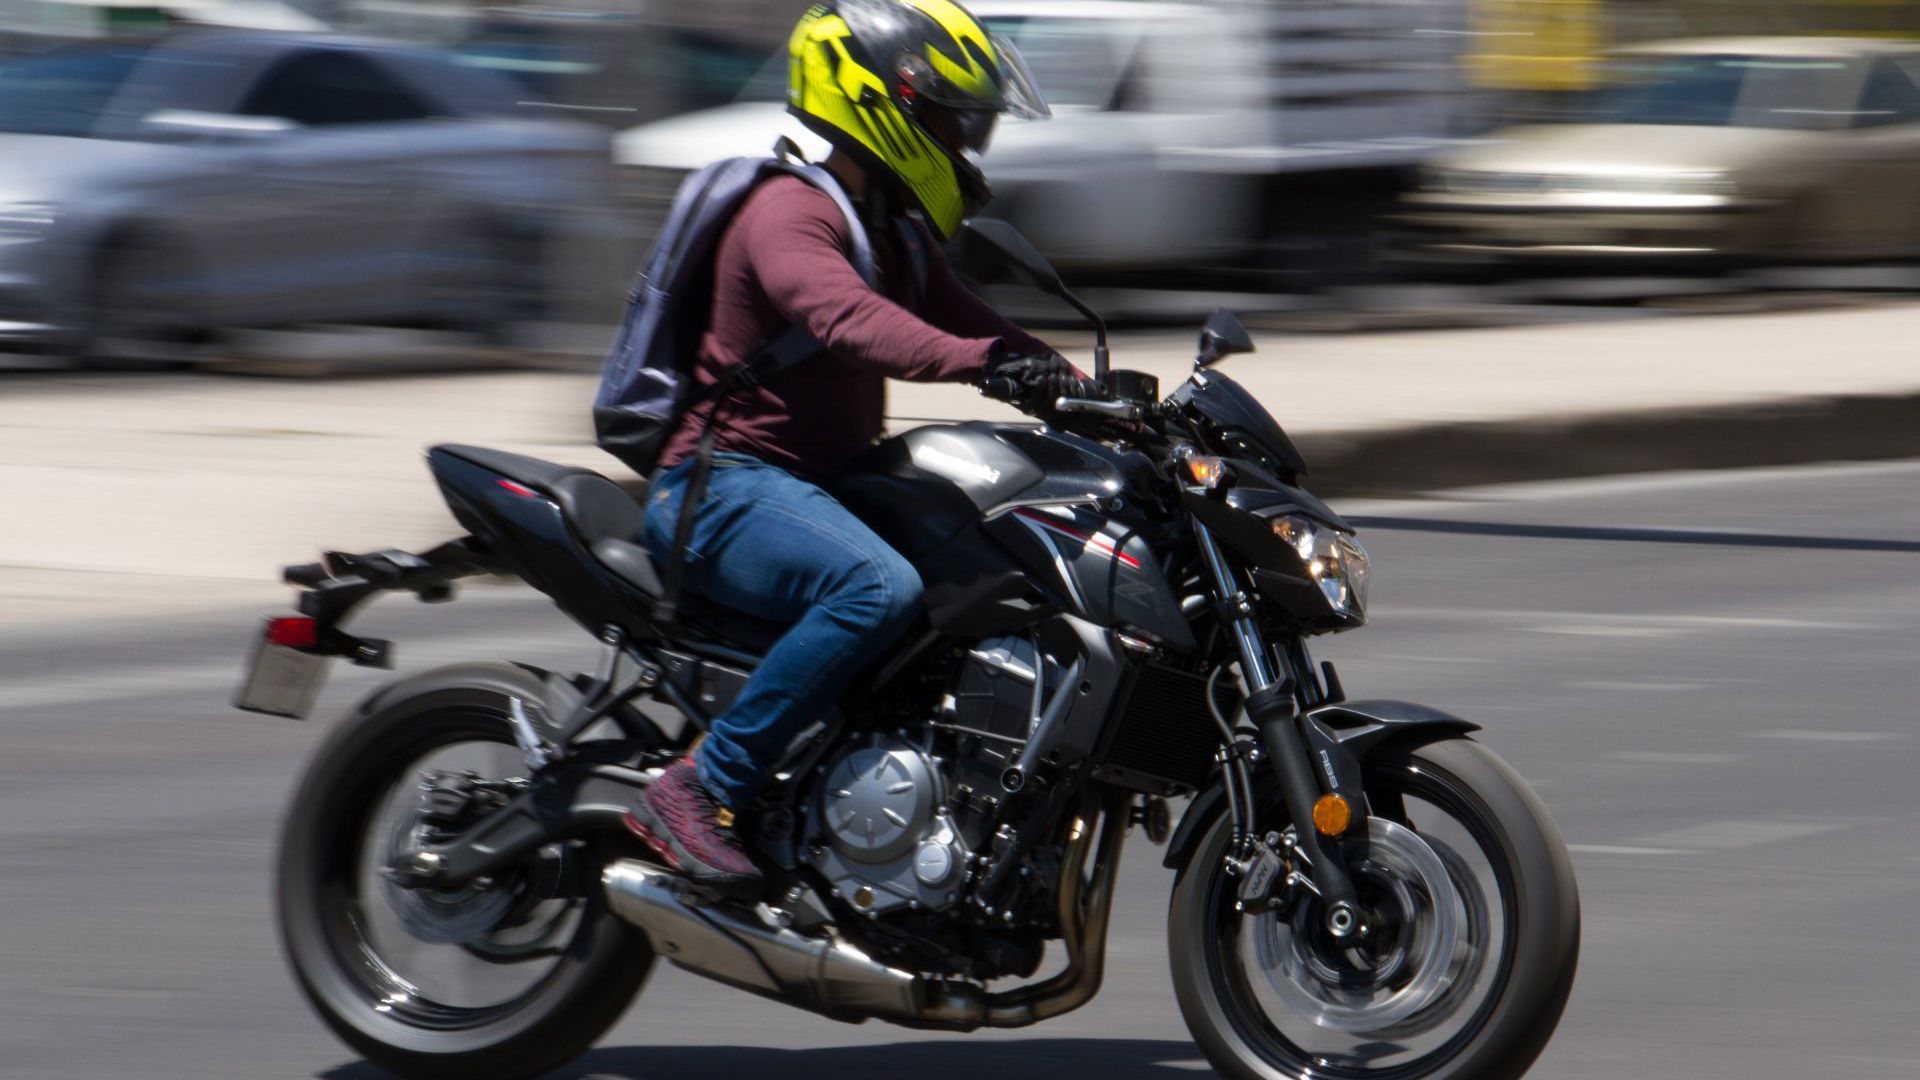 Registro electronico de motociclistas en la CDMX - motonetas - 18-01-22